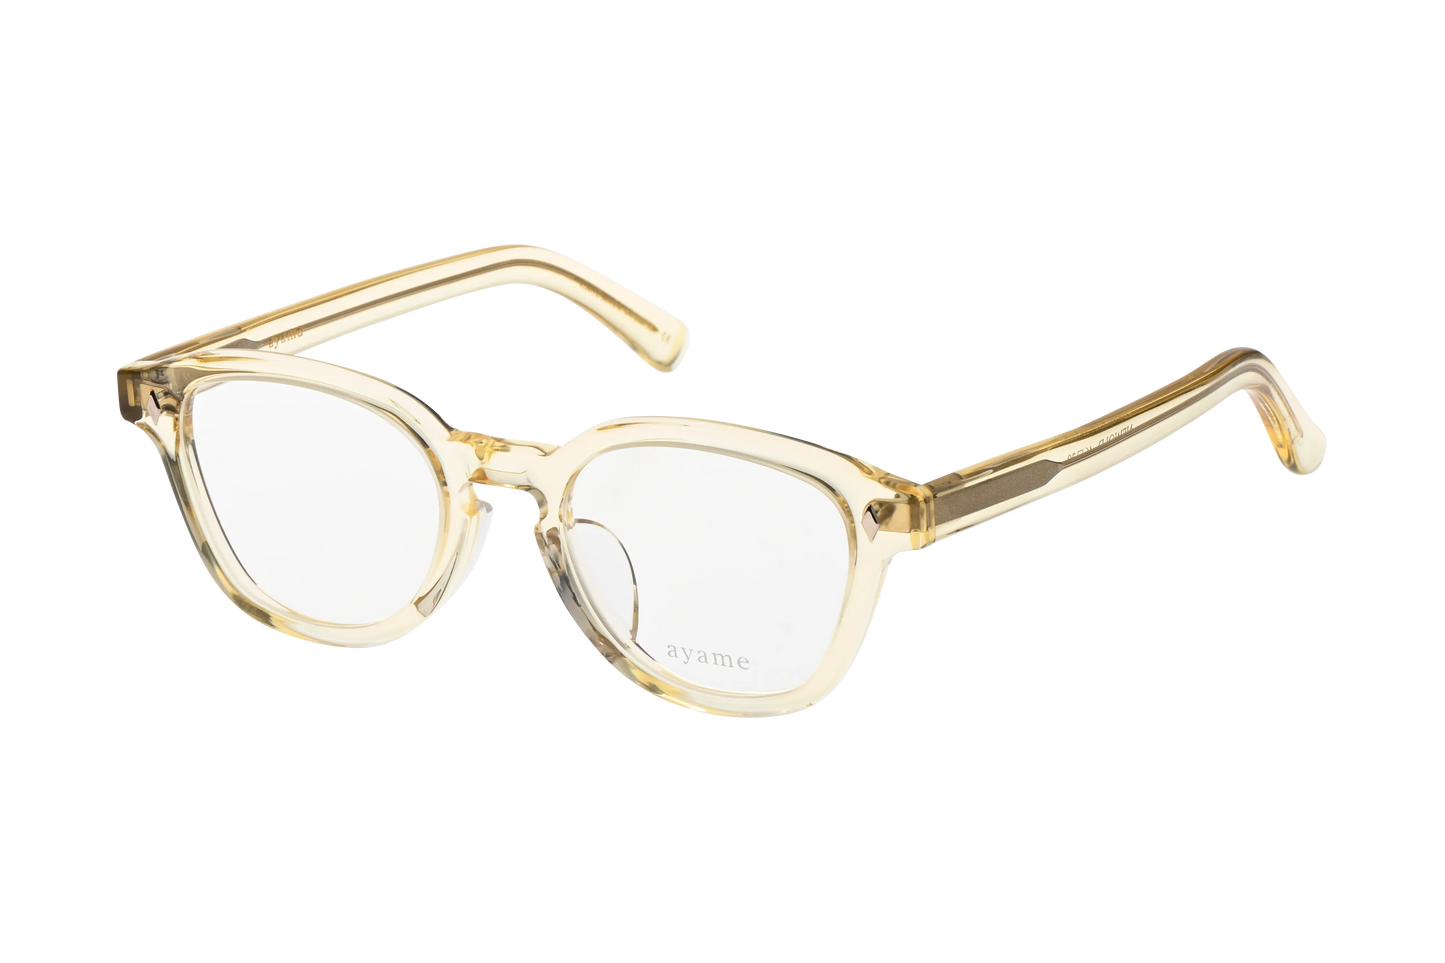 ウェリントン型メガネのニューオールド46のクリスタルゴールド